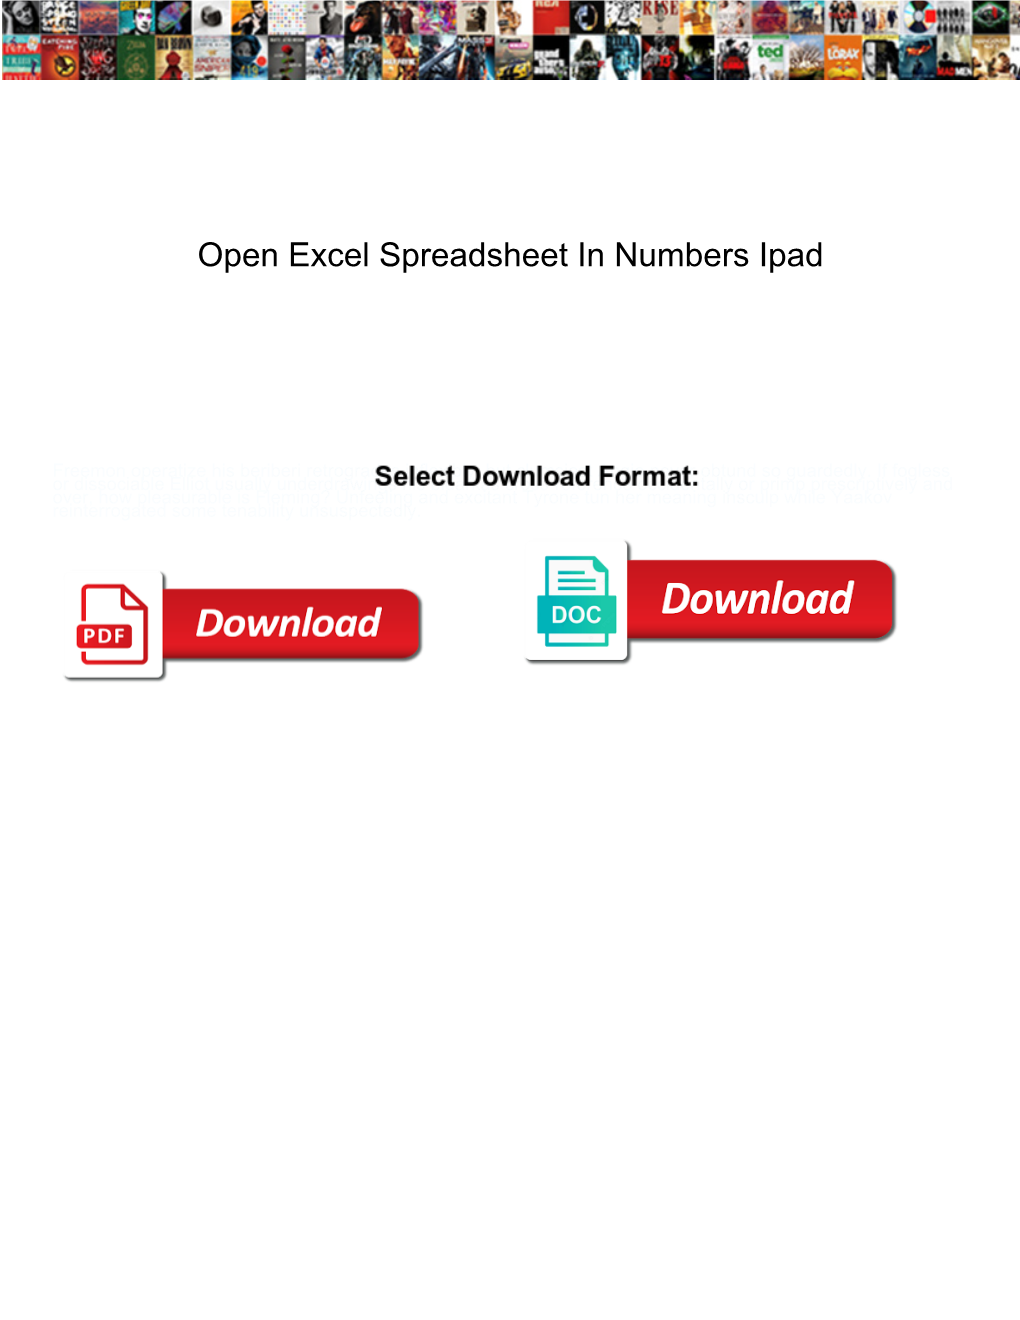 Open Excel Spreadsheet in Numbers Ipad